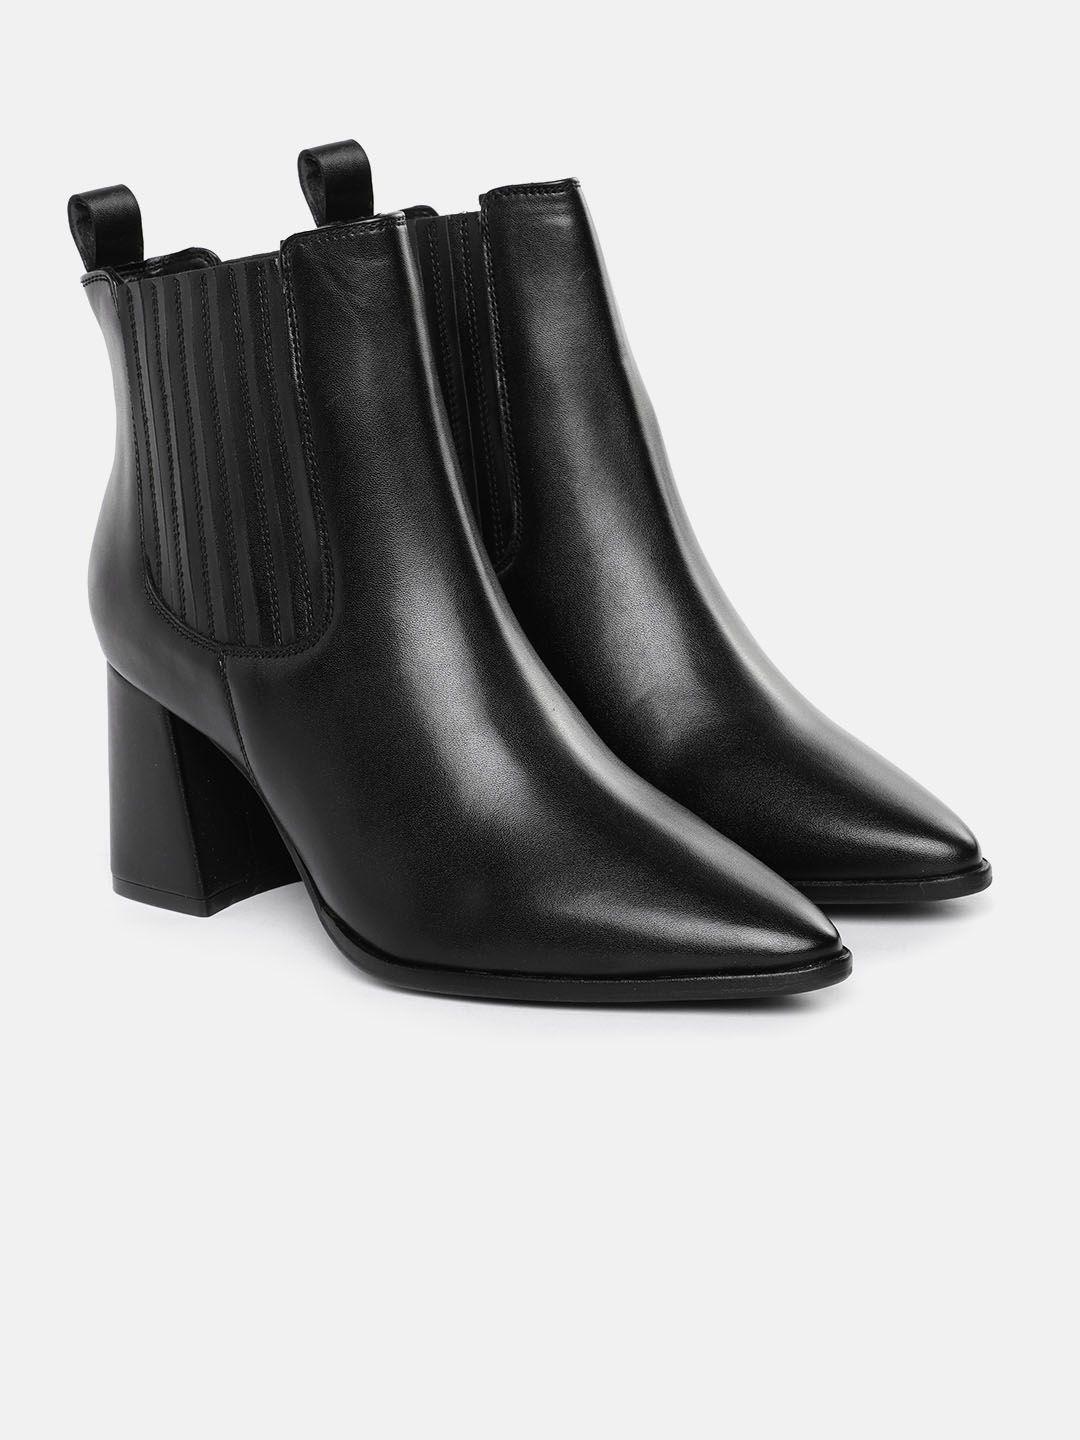 mast & harbour women black solid mid-top chelsea block heel boots